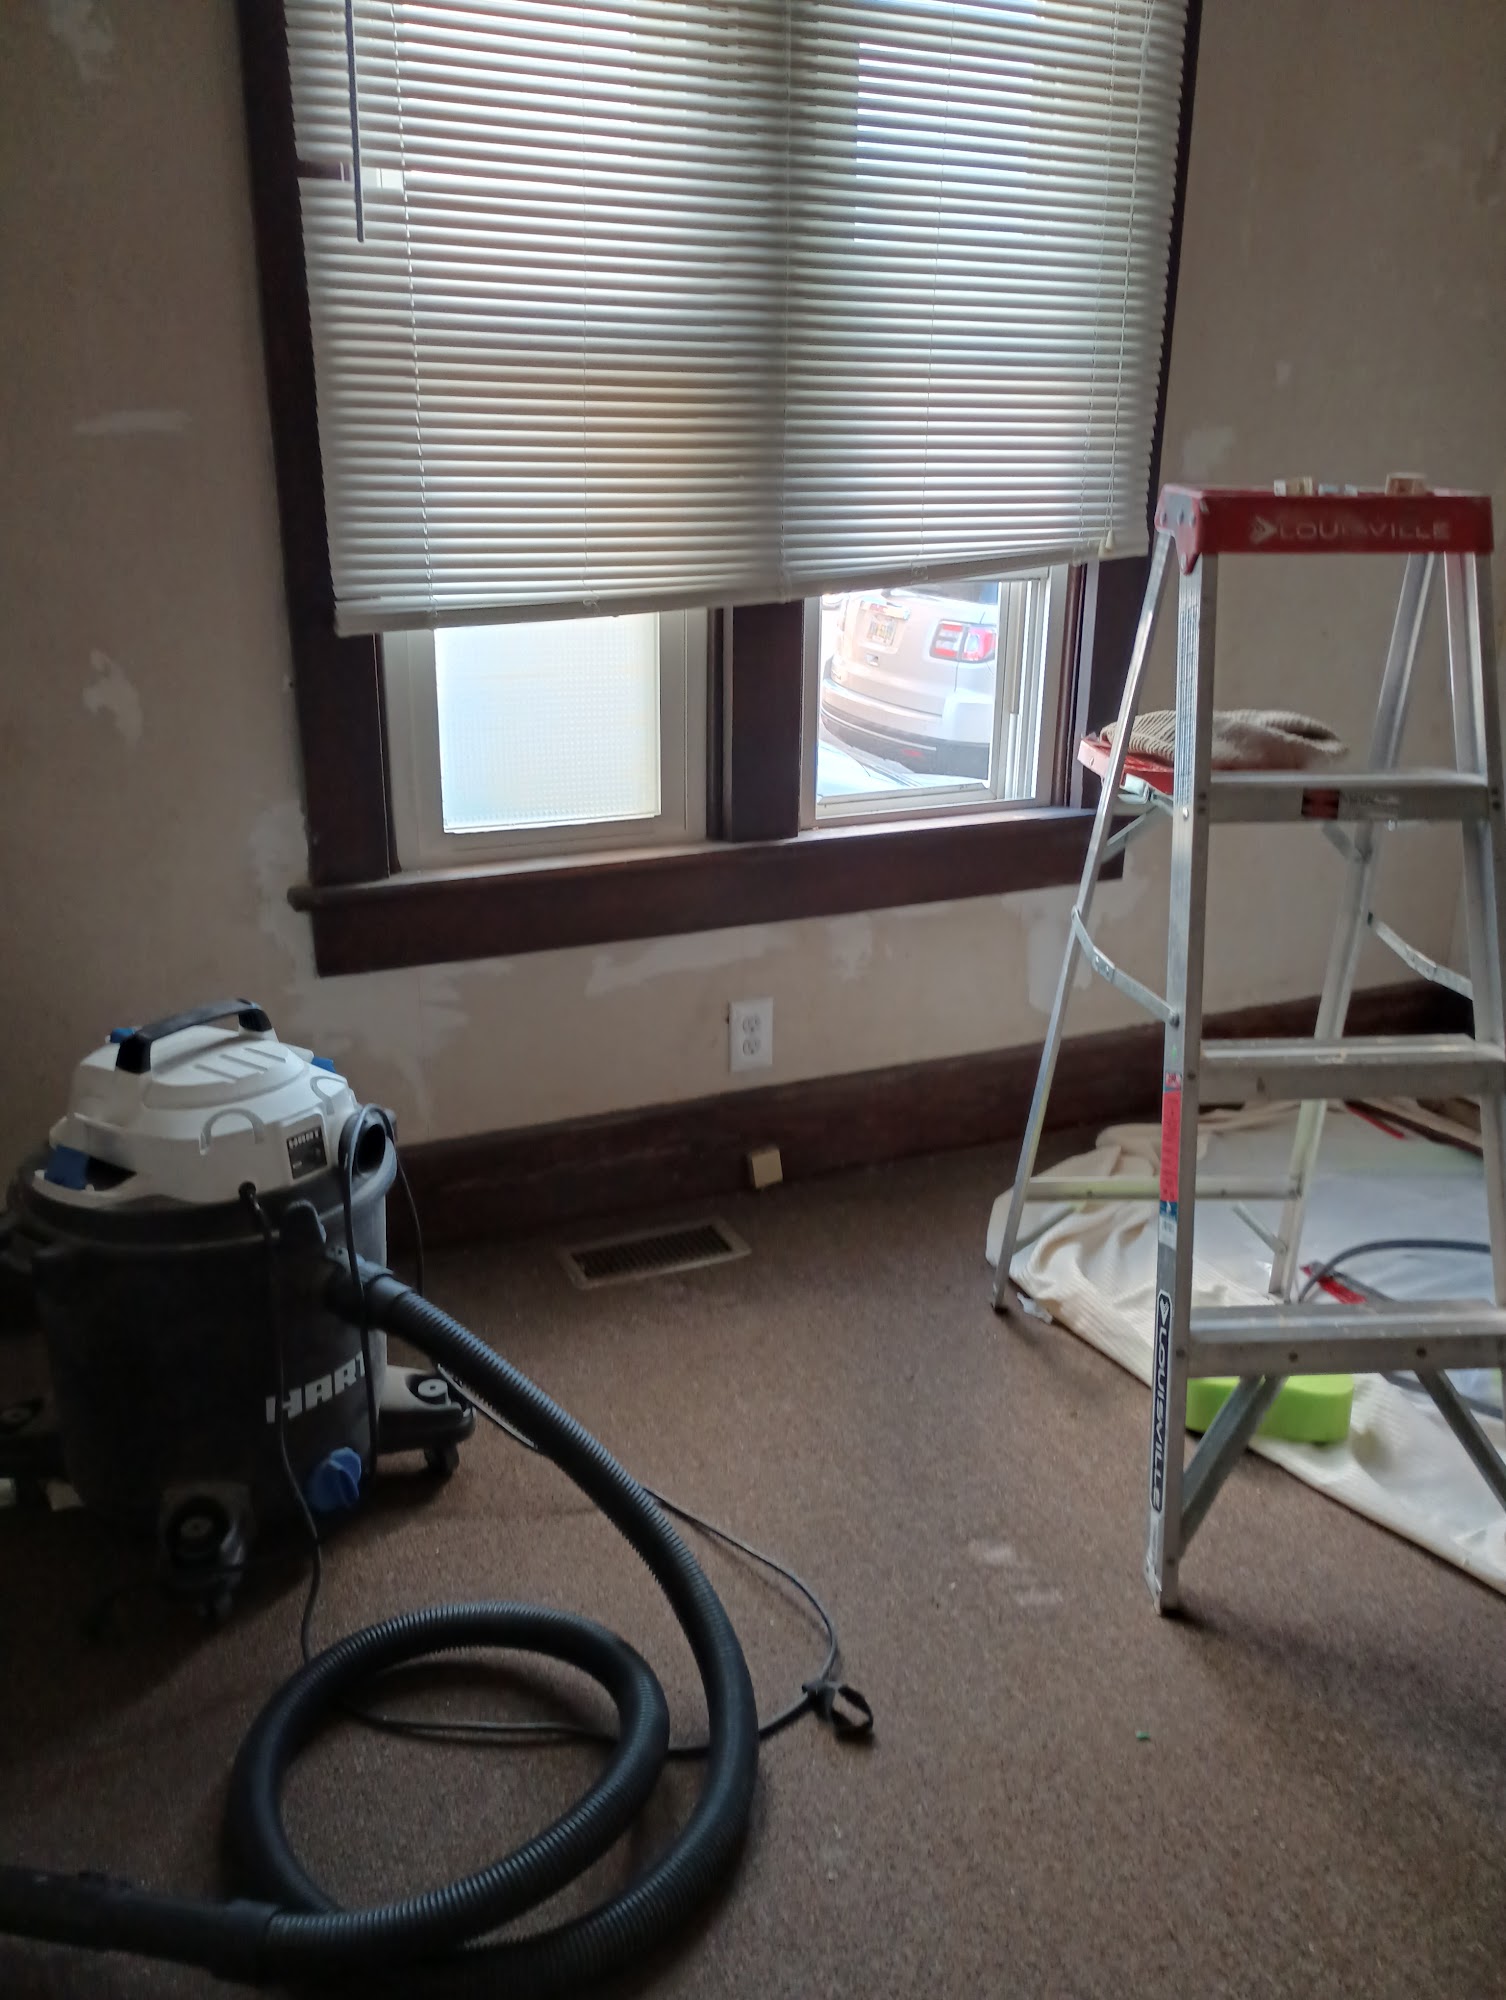 Kings Remodeling and Repair, LLC 425 N Main St, Bryan Ohio 43506